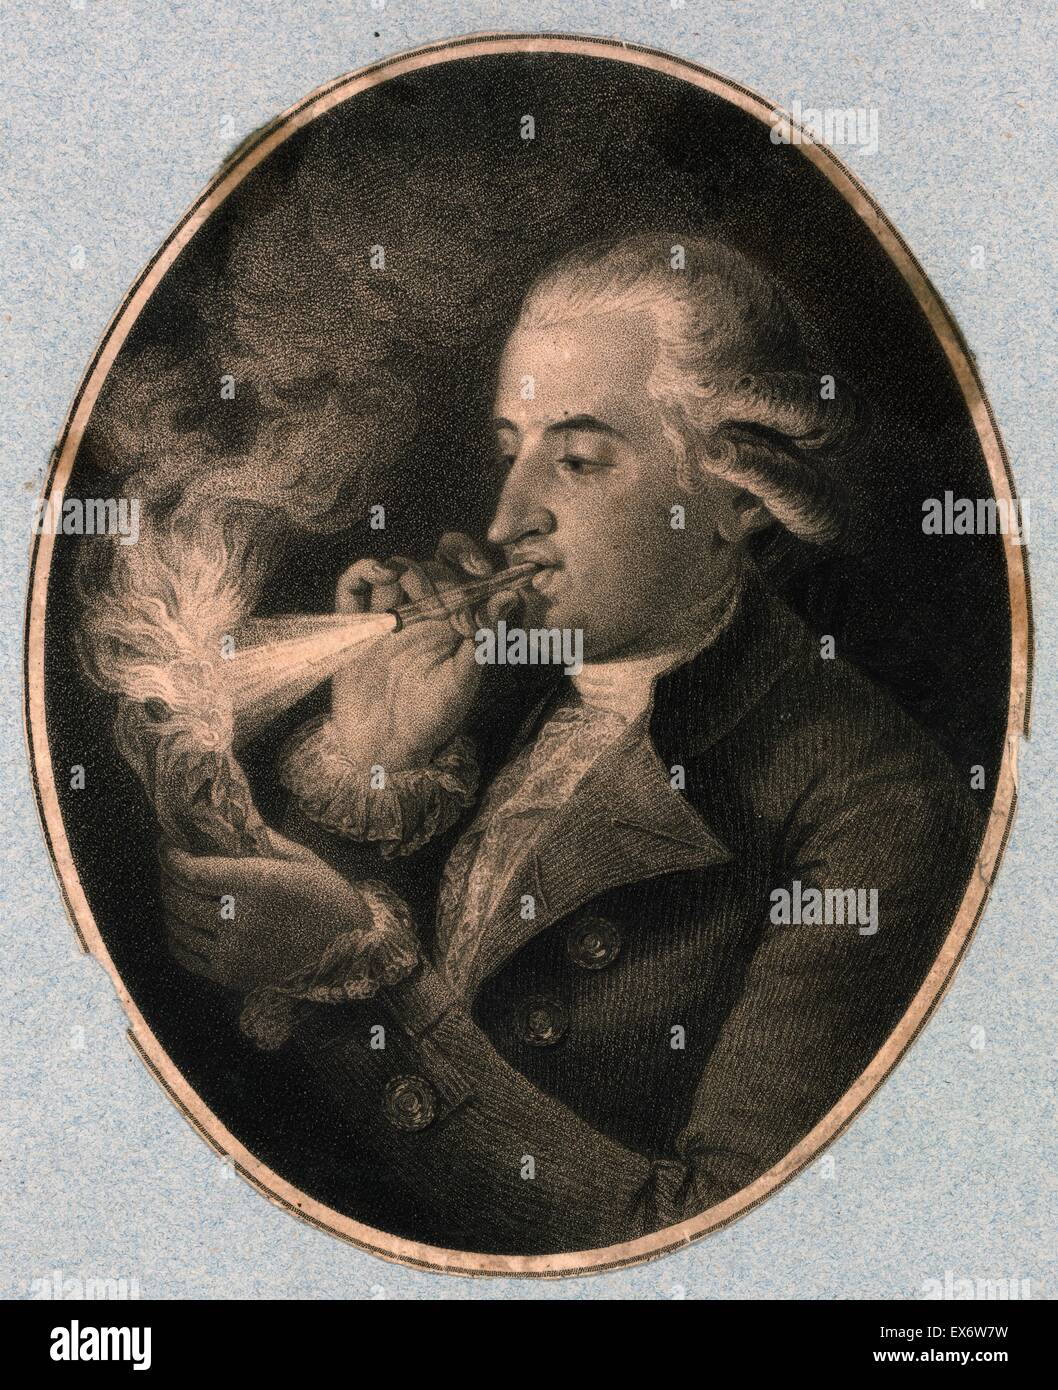 Ritratto di Jean-François Pilâtre de Rozier (1754-1785) francese chimica e fisica insegnante, e uno dei primi pionieri dell'aviazione. Datata 1820 Foto Stock